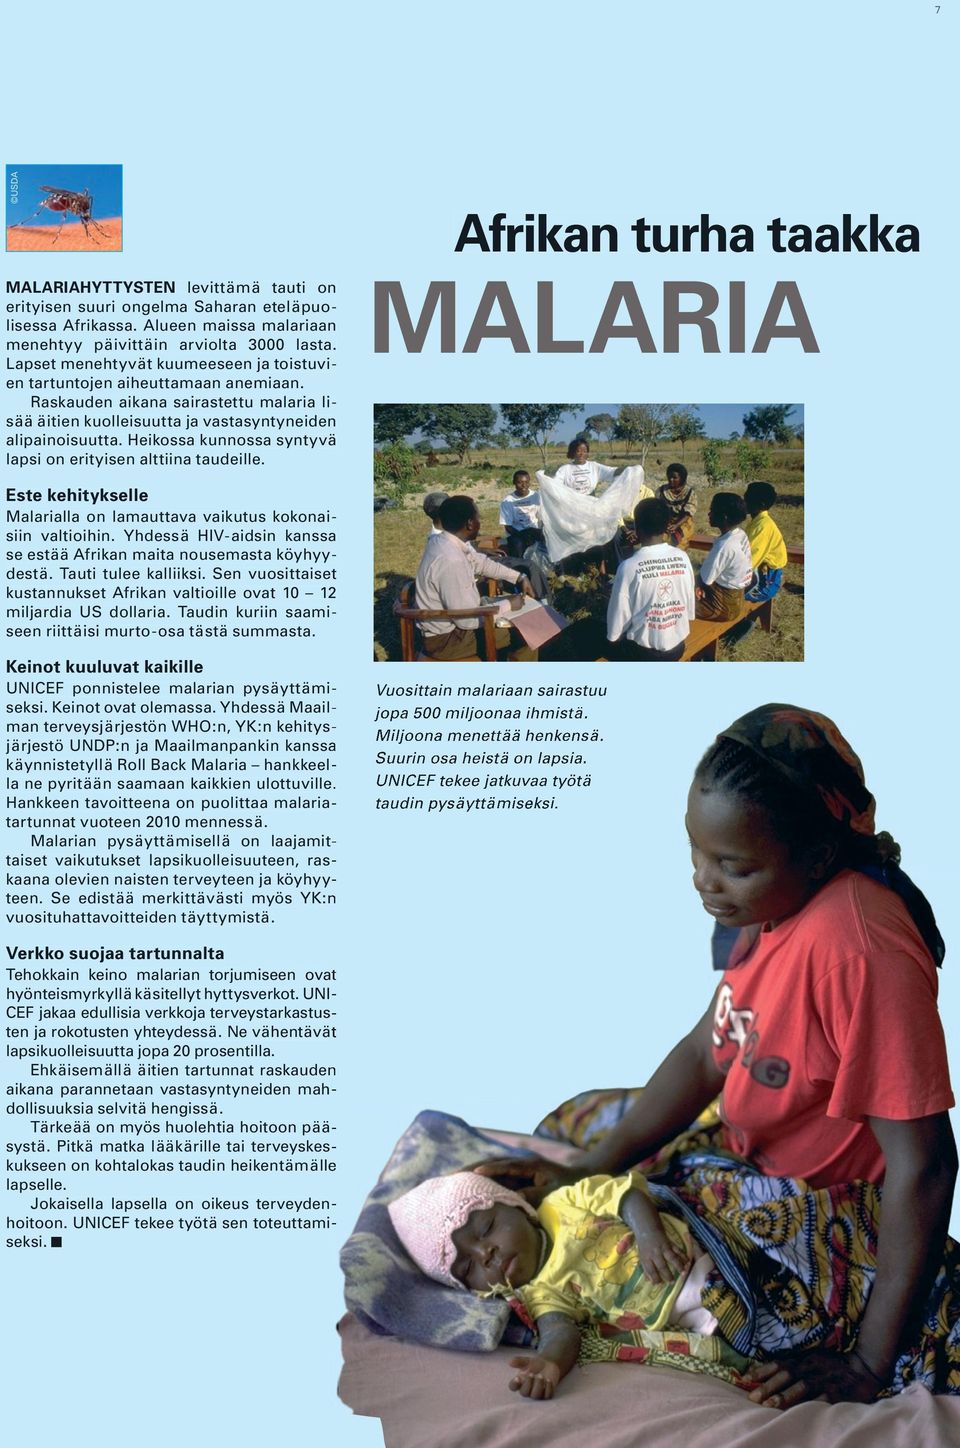 Heikossa kunnossa syntyvä lapsi on erityisen alttiina taudeille. Afrikan turha taakka MALARIA Este kehitykselle Malarialla on lamauttava vaikutus kokonaisiin valtioihin.